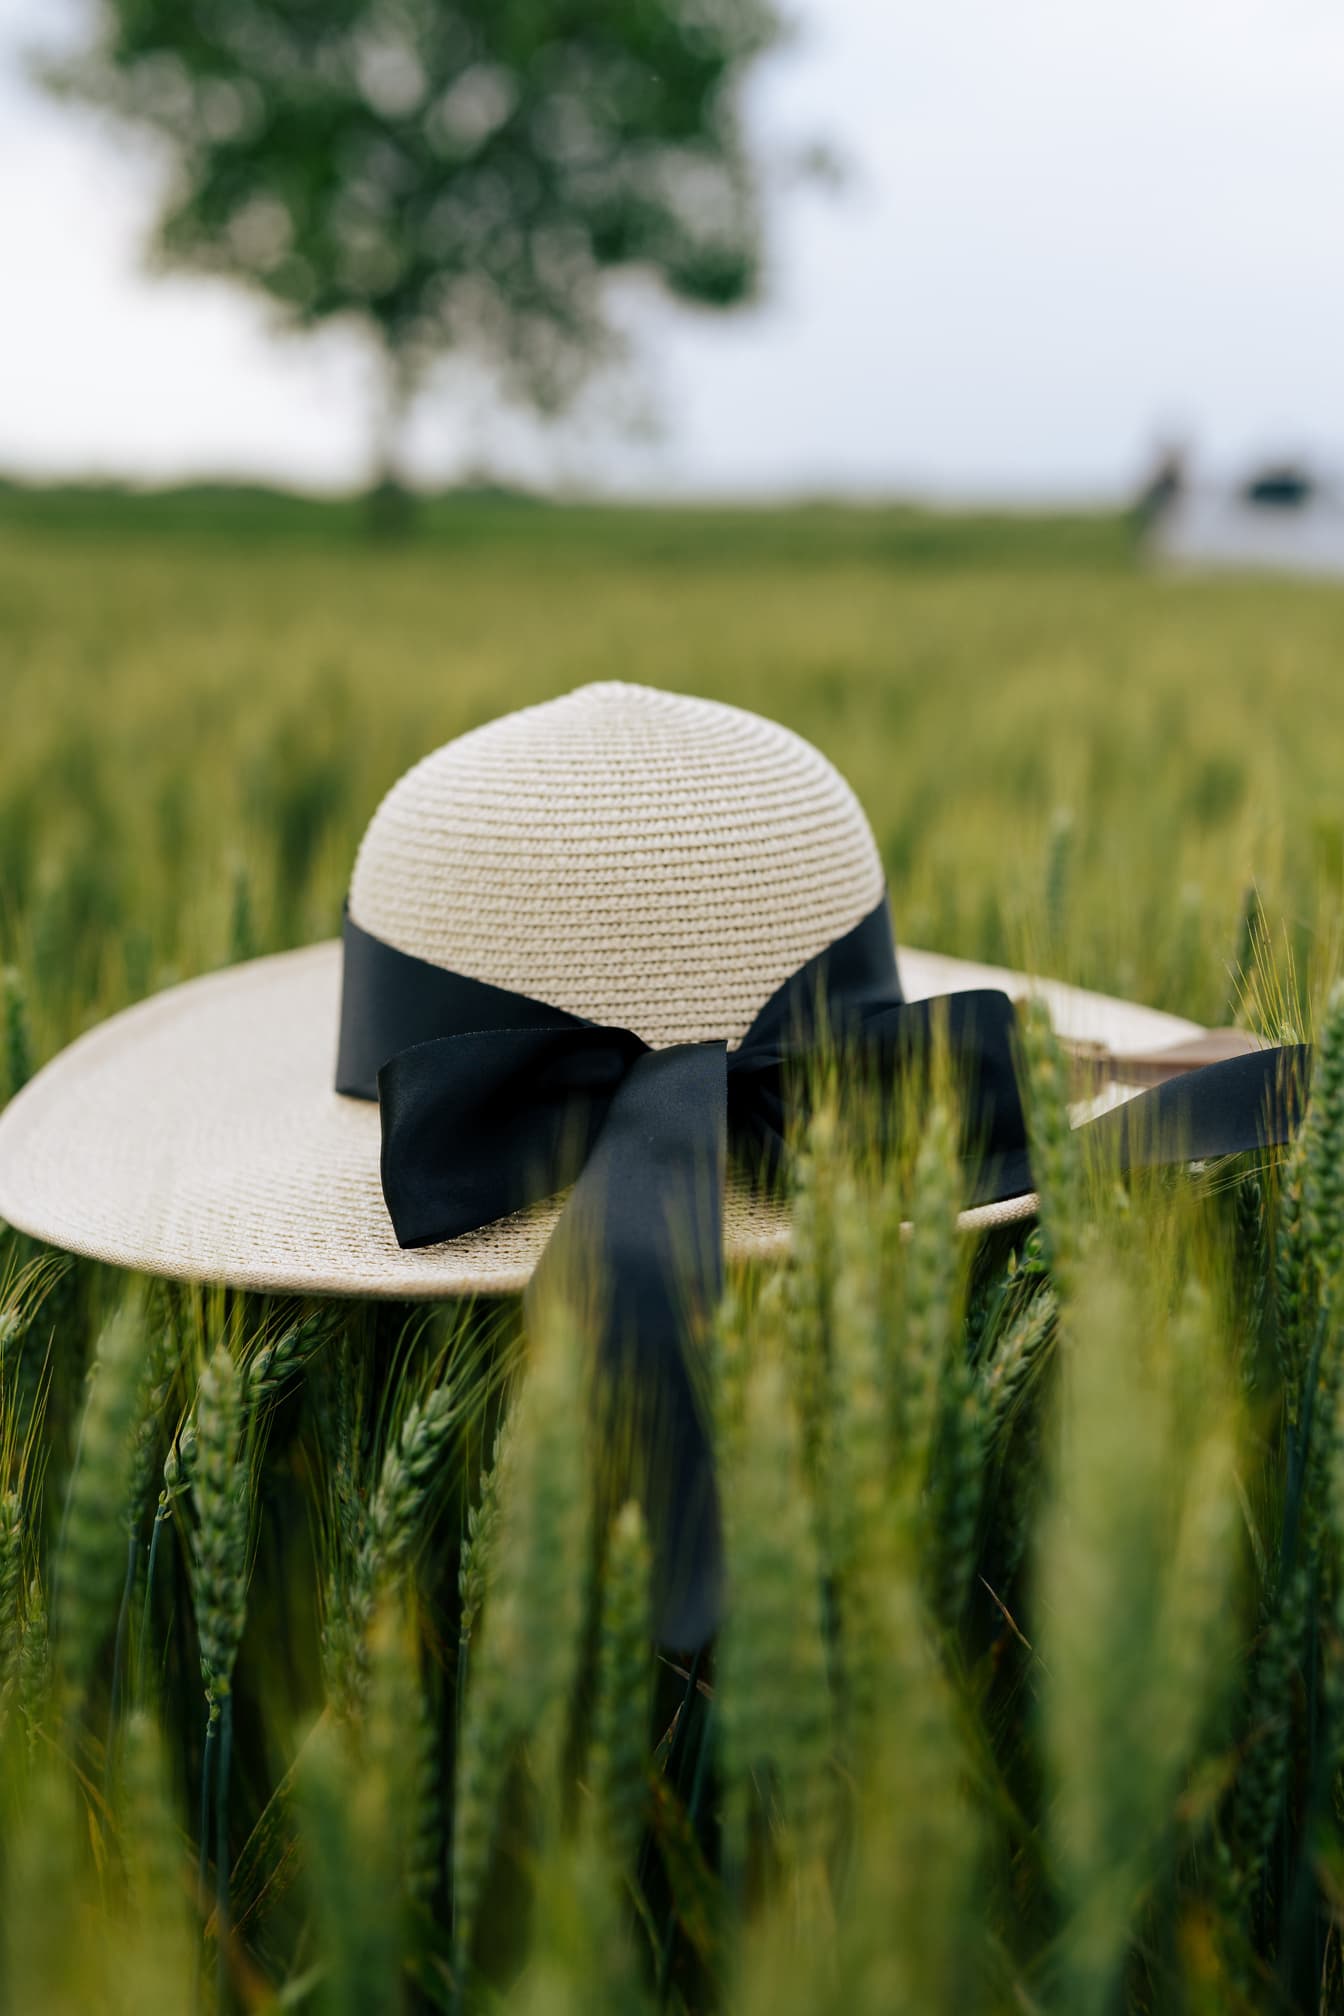 Pălărie albă de paie cu panglică neagră deasupra grâului în câmp de grâu